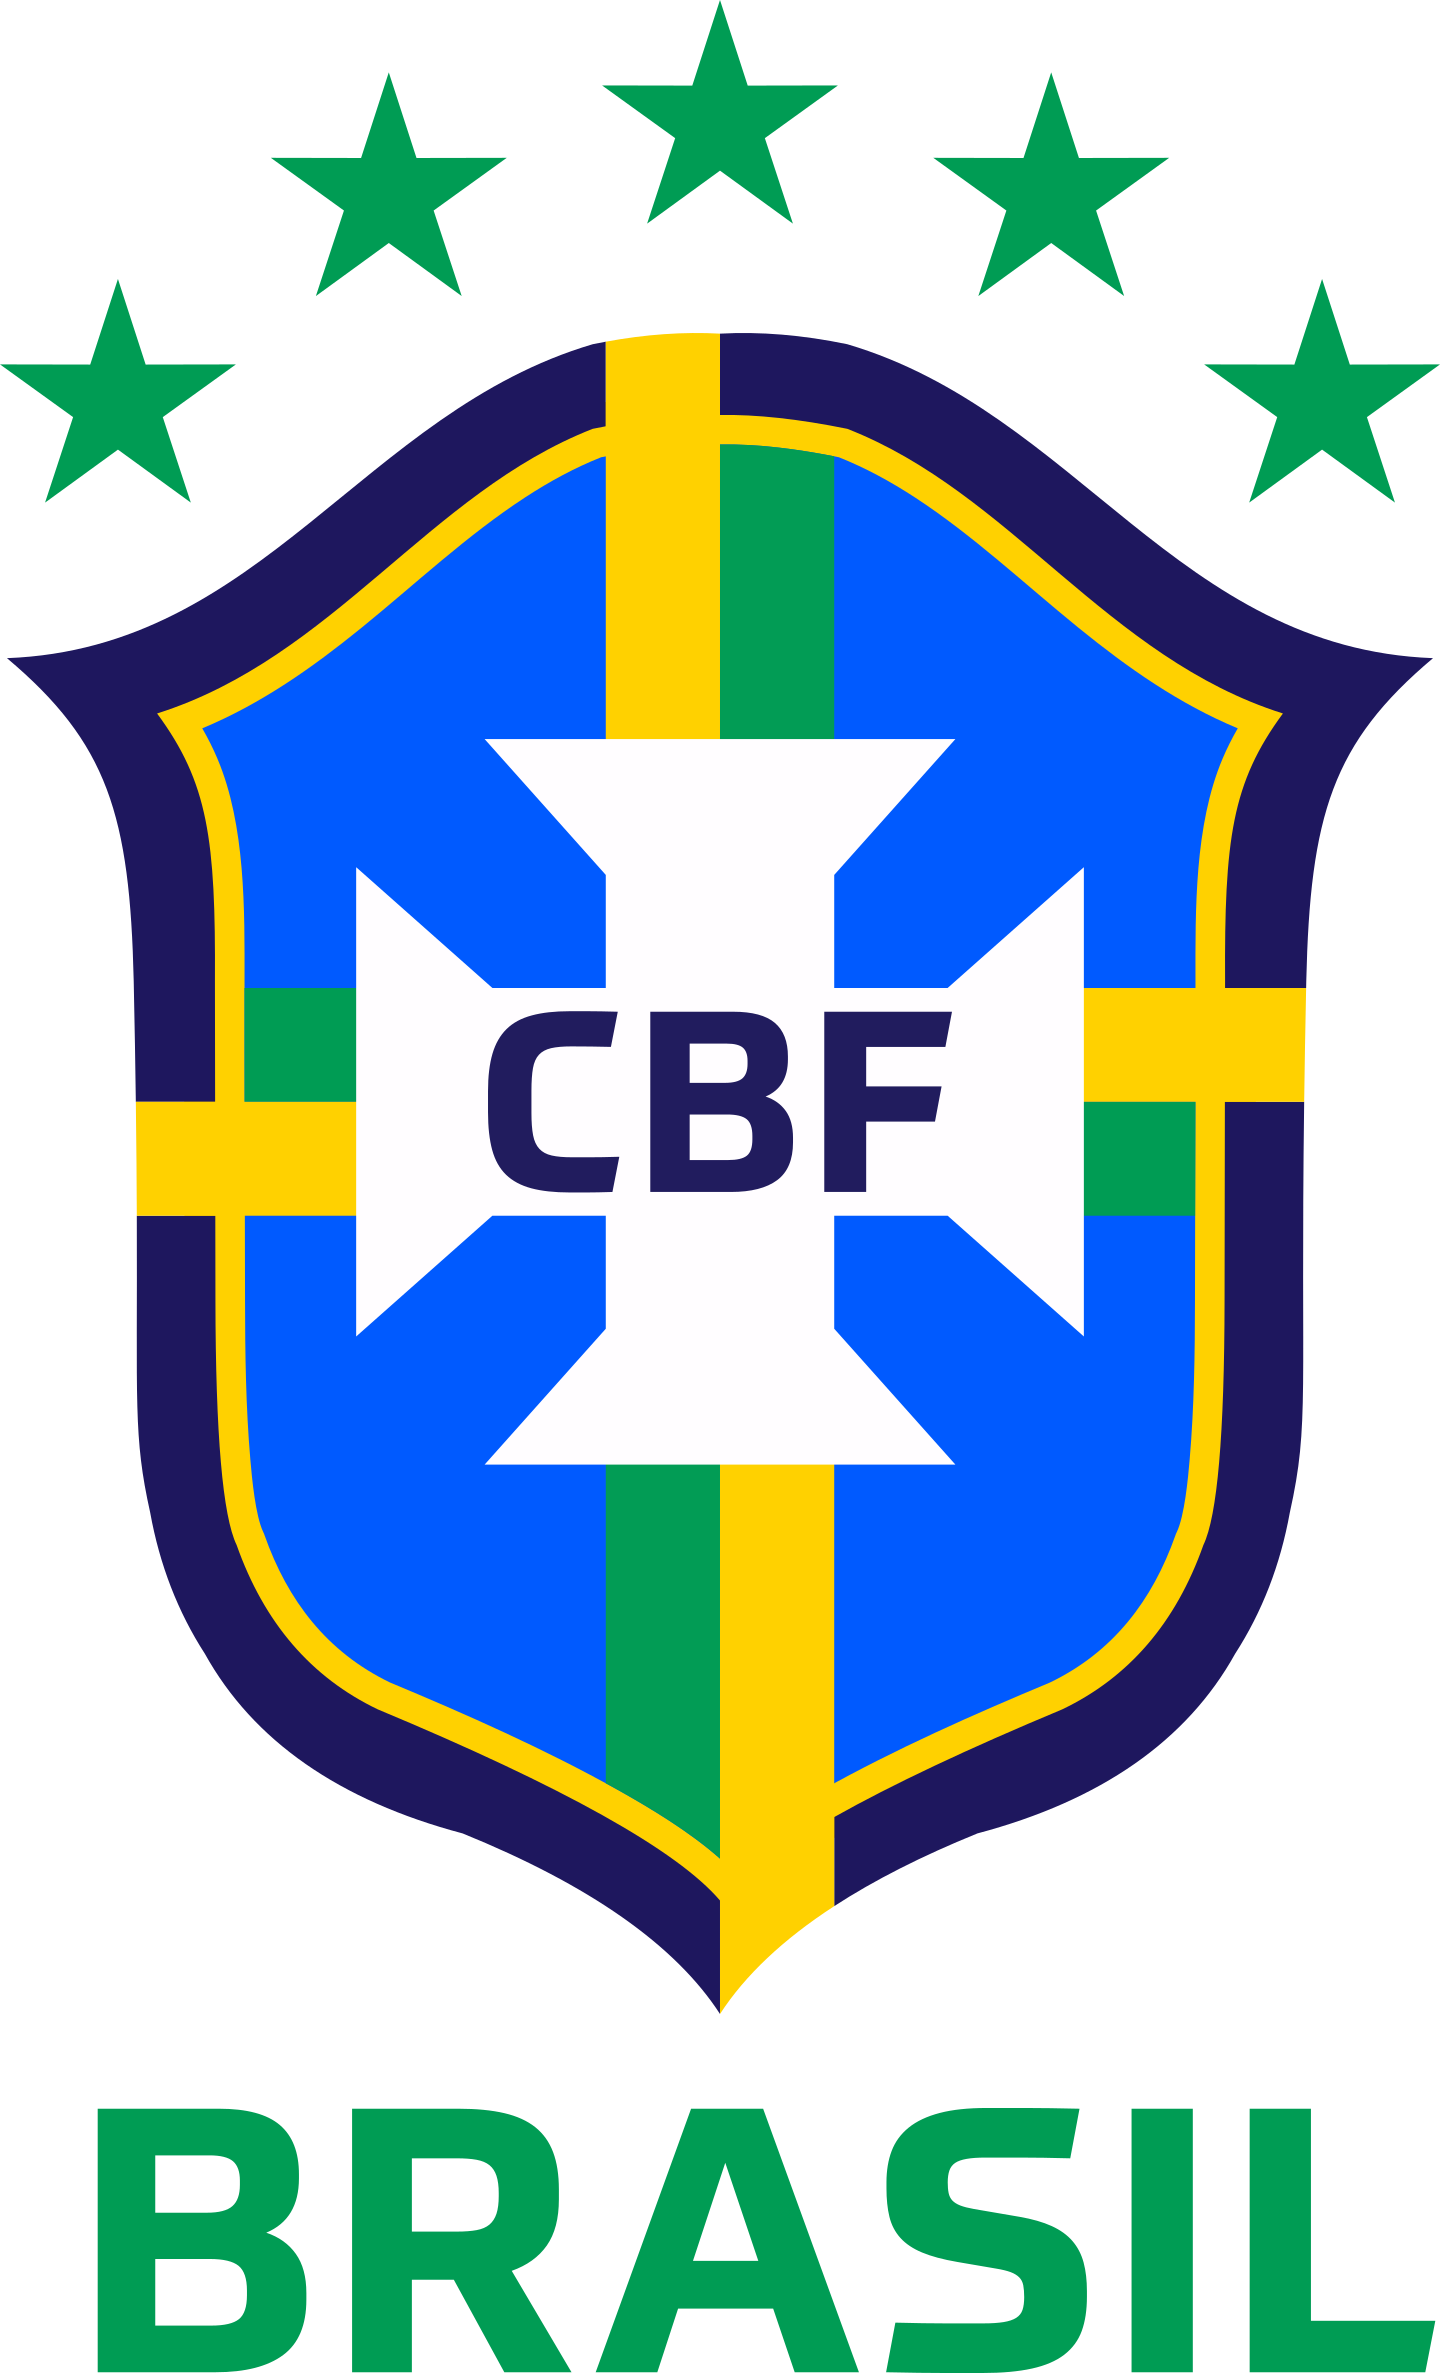 brazil national football team logo 2 - Brazil National Football Team Logo